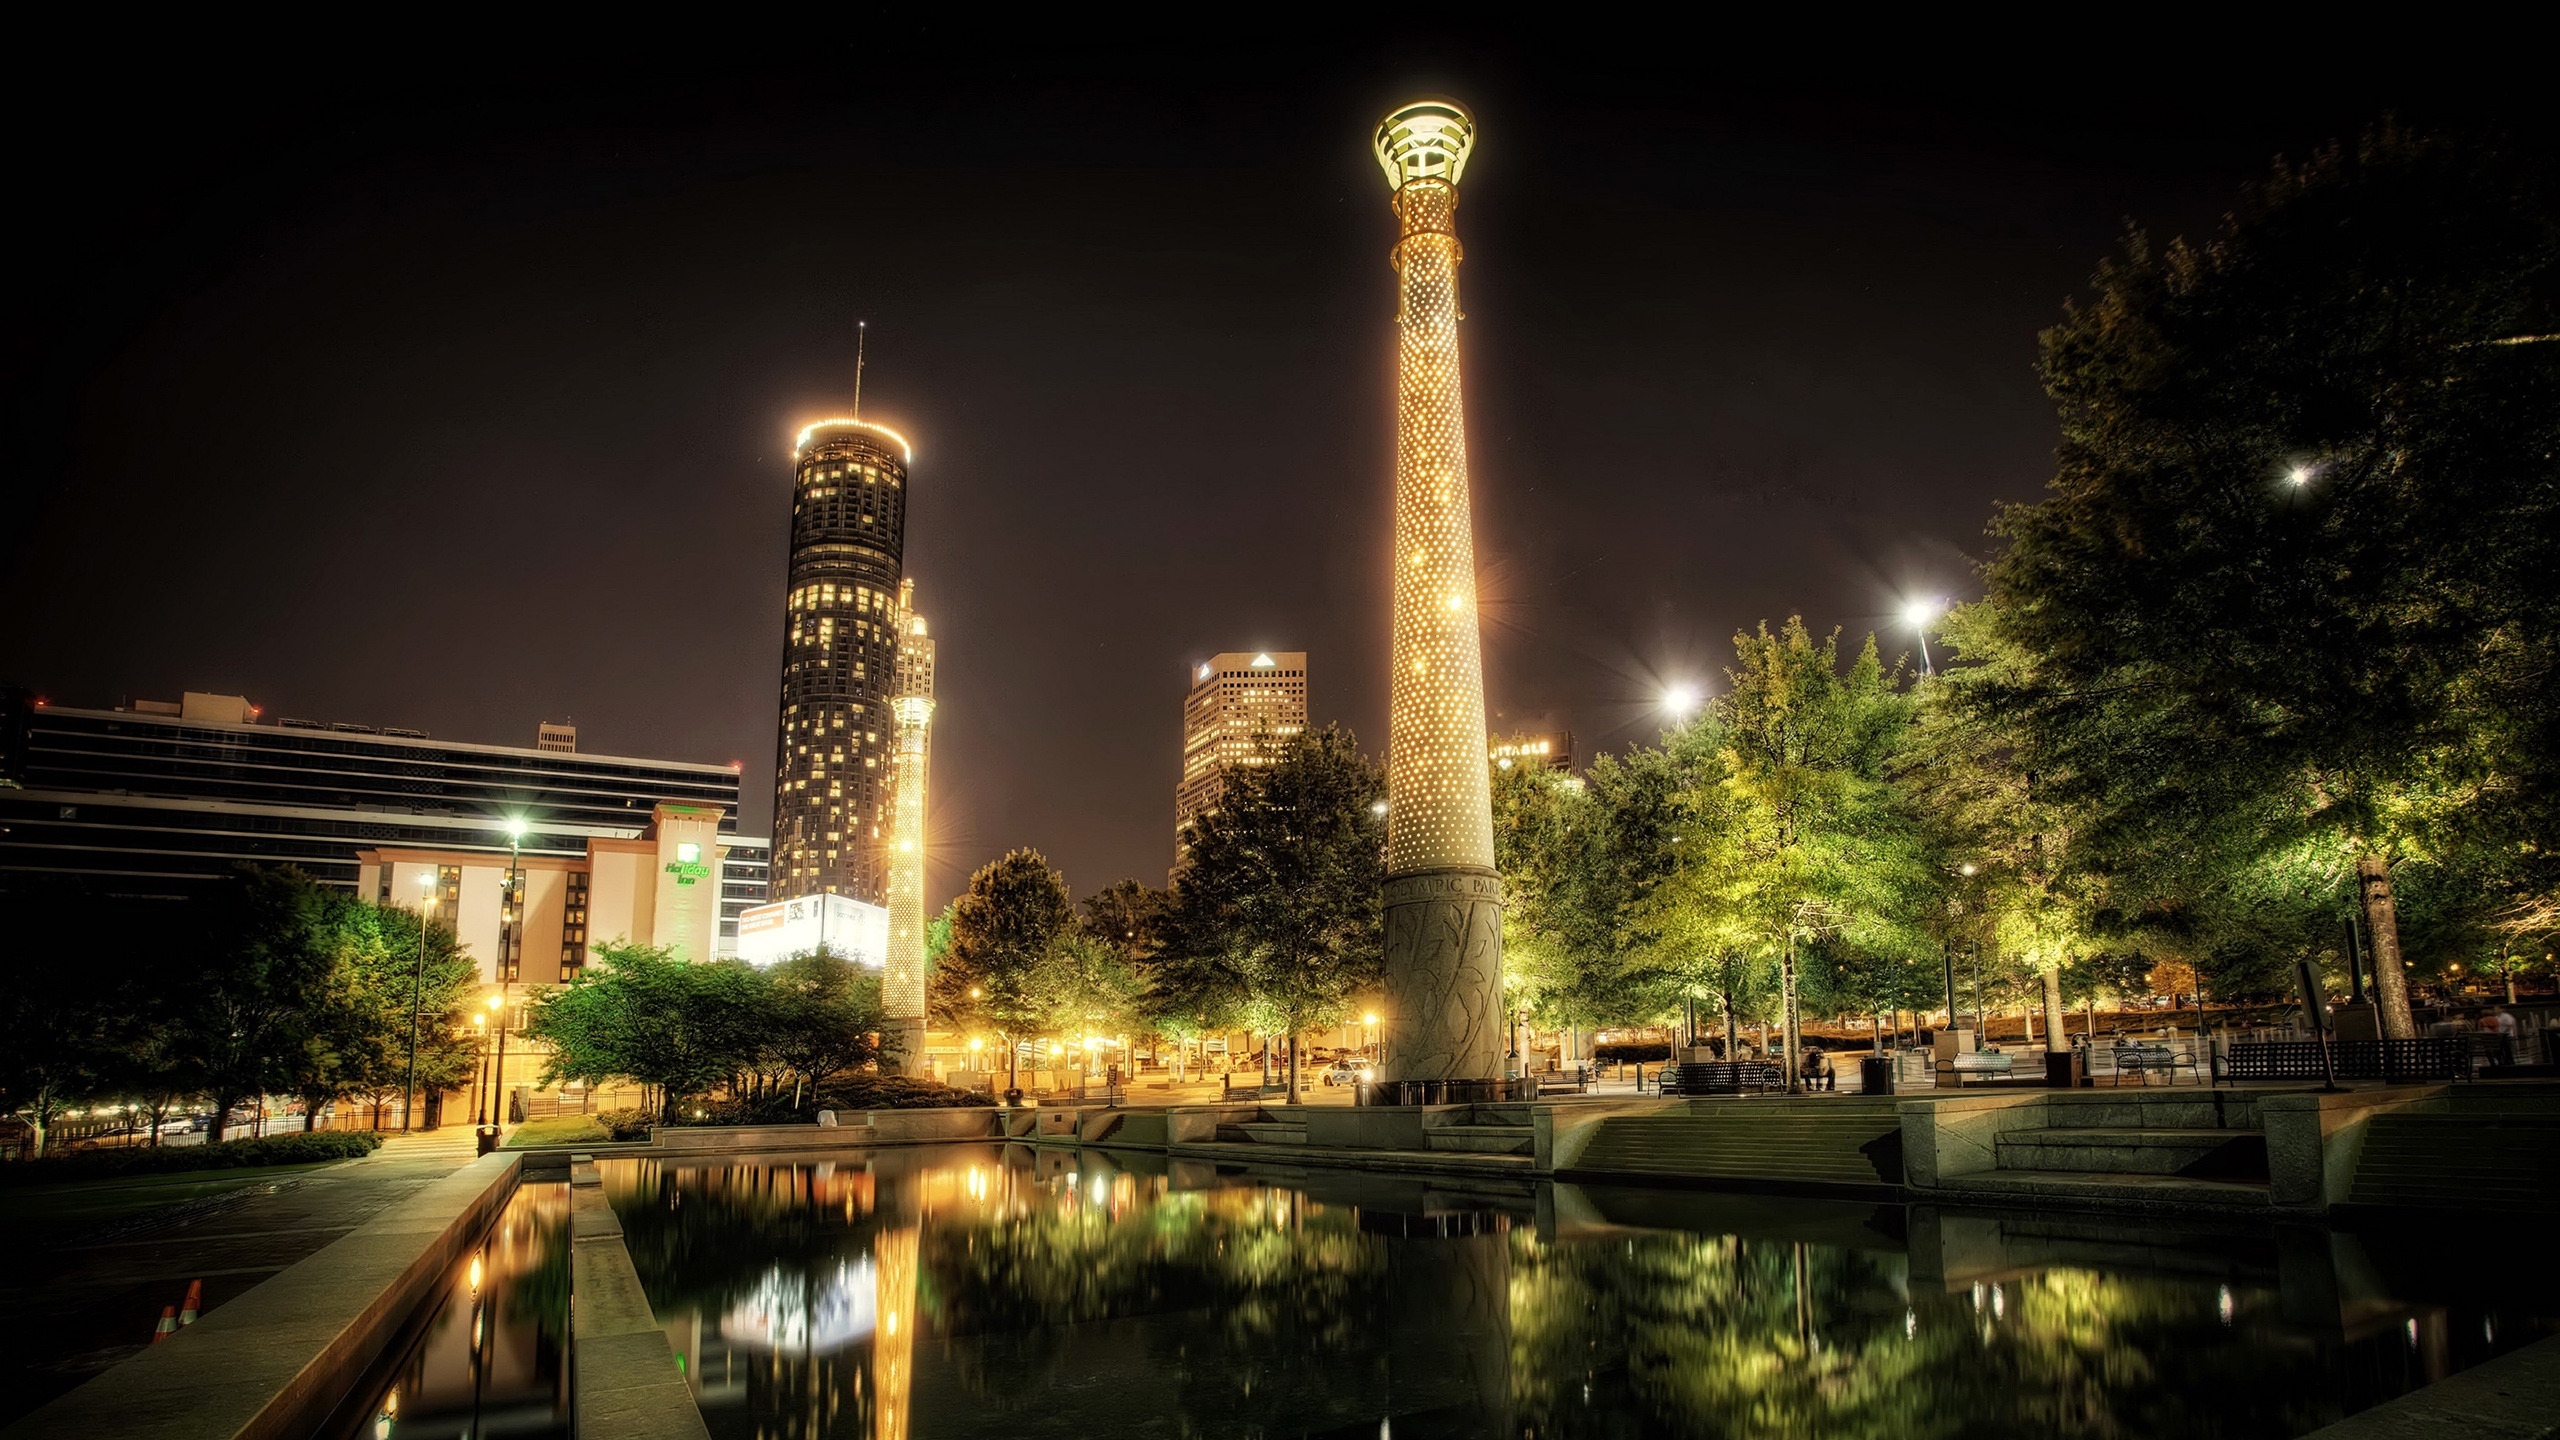 Park Centennial Atlanta Night for 2560x1440 HDTV resolution